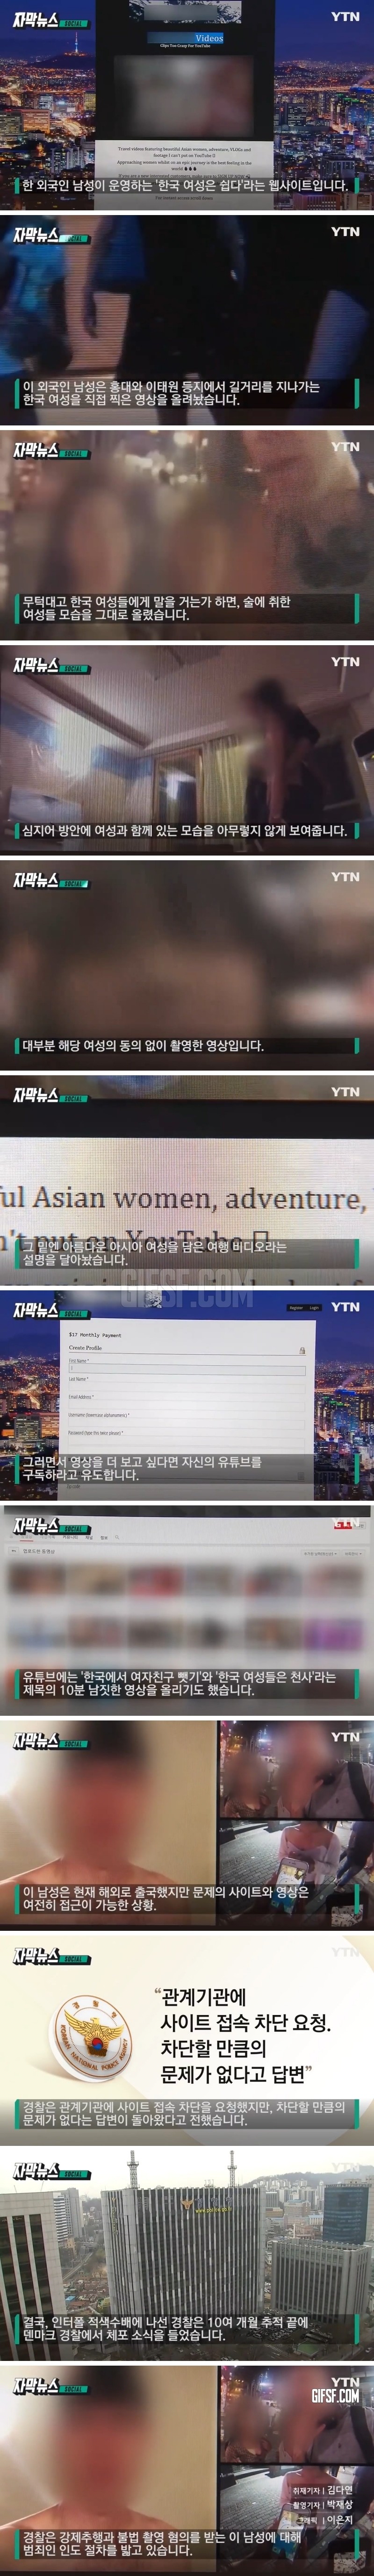 한국 여성은 쉽다', 외국인 남성이 운영한 사이트 보니... .jpg